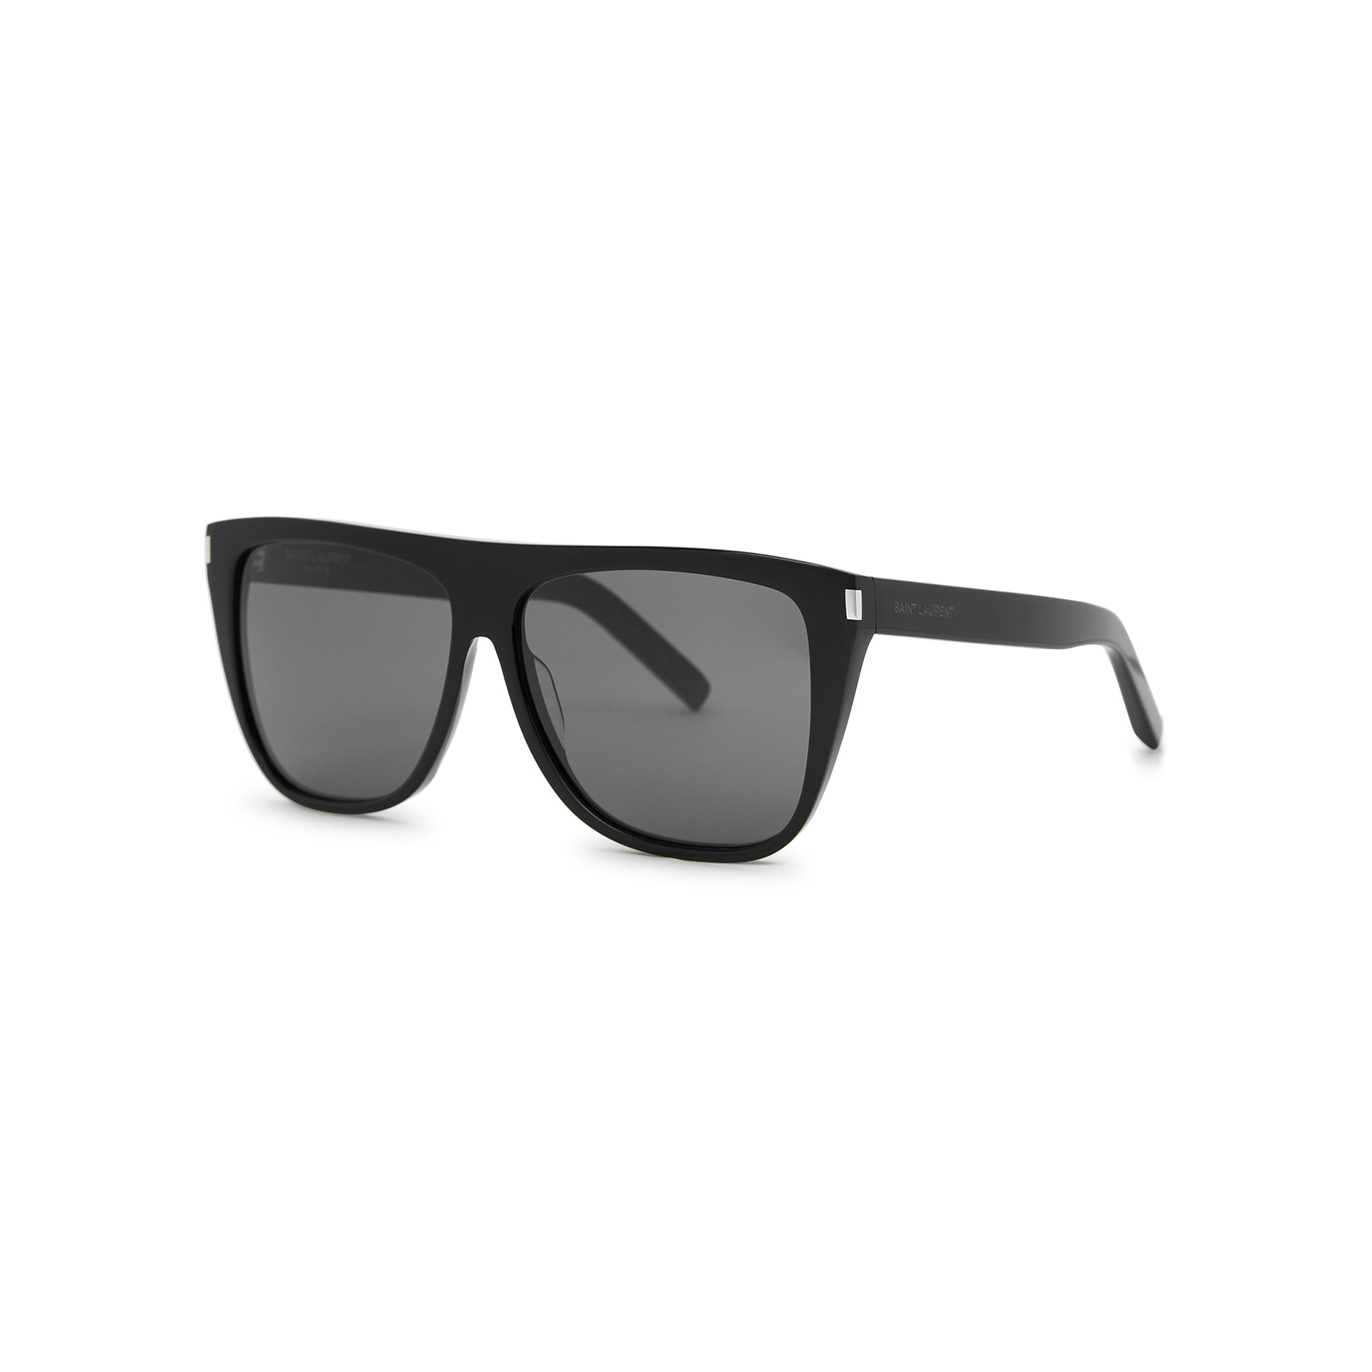 Saint Laurent SL102 Black D-frame, Sunglasses, Dark Grey Lenses